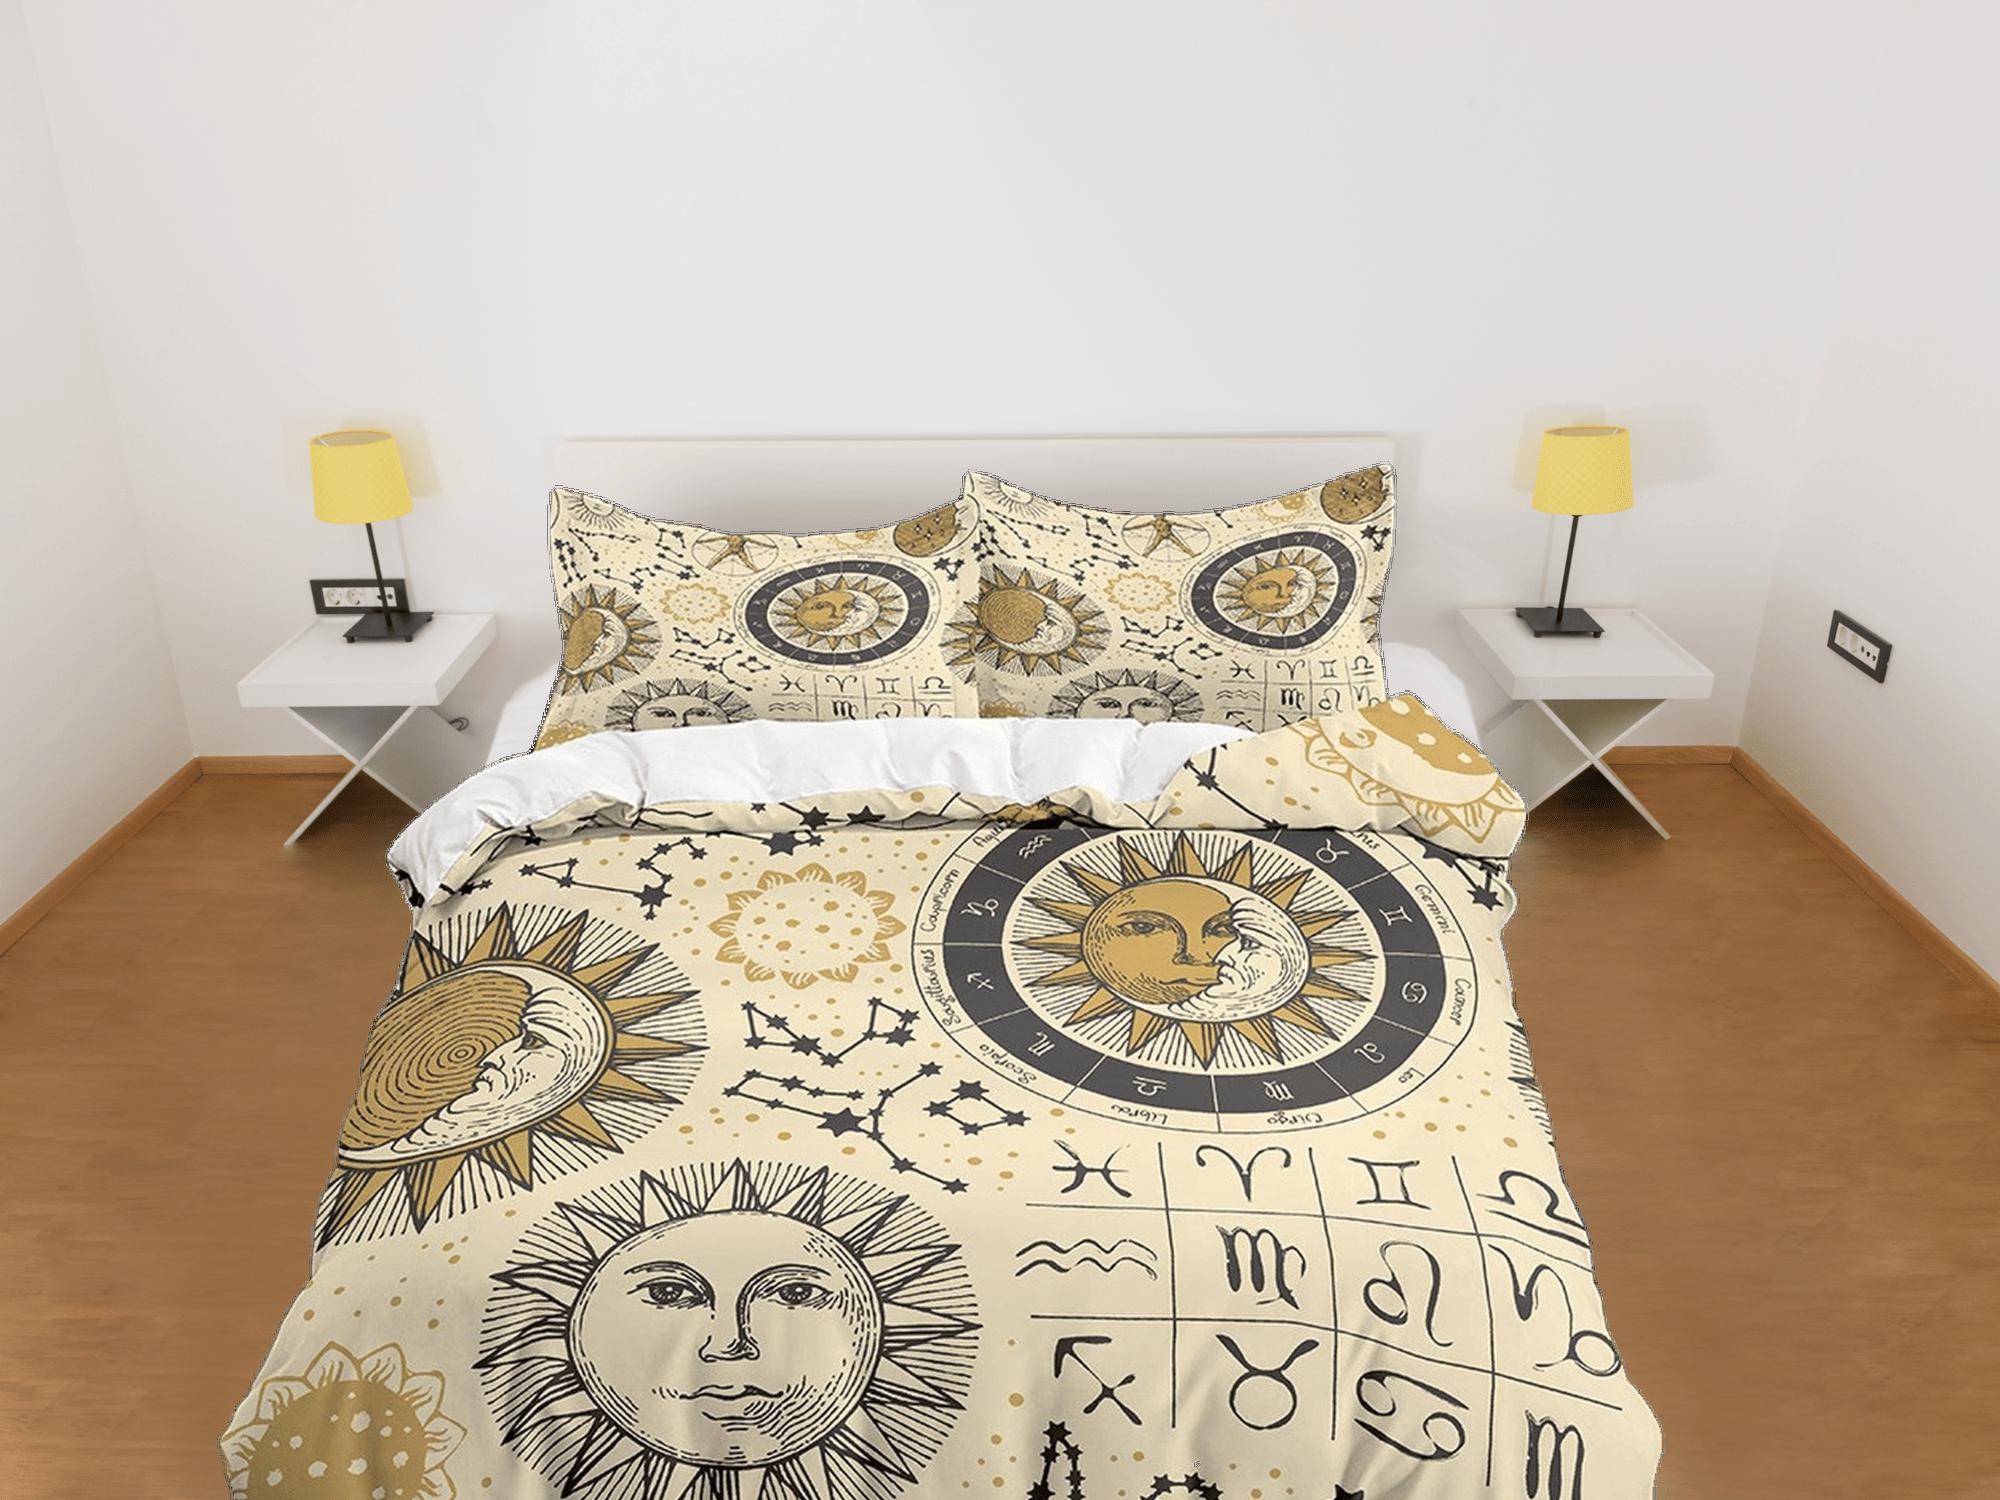 daintyduvet Celestial beige bedding, witchy decor dorm bedding, aesthetic duvet, boho bedding set full king queen, astrology gift, gothic art horoscope